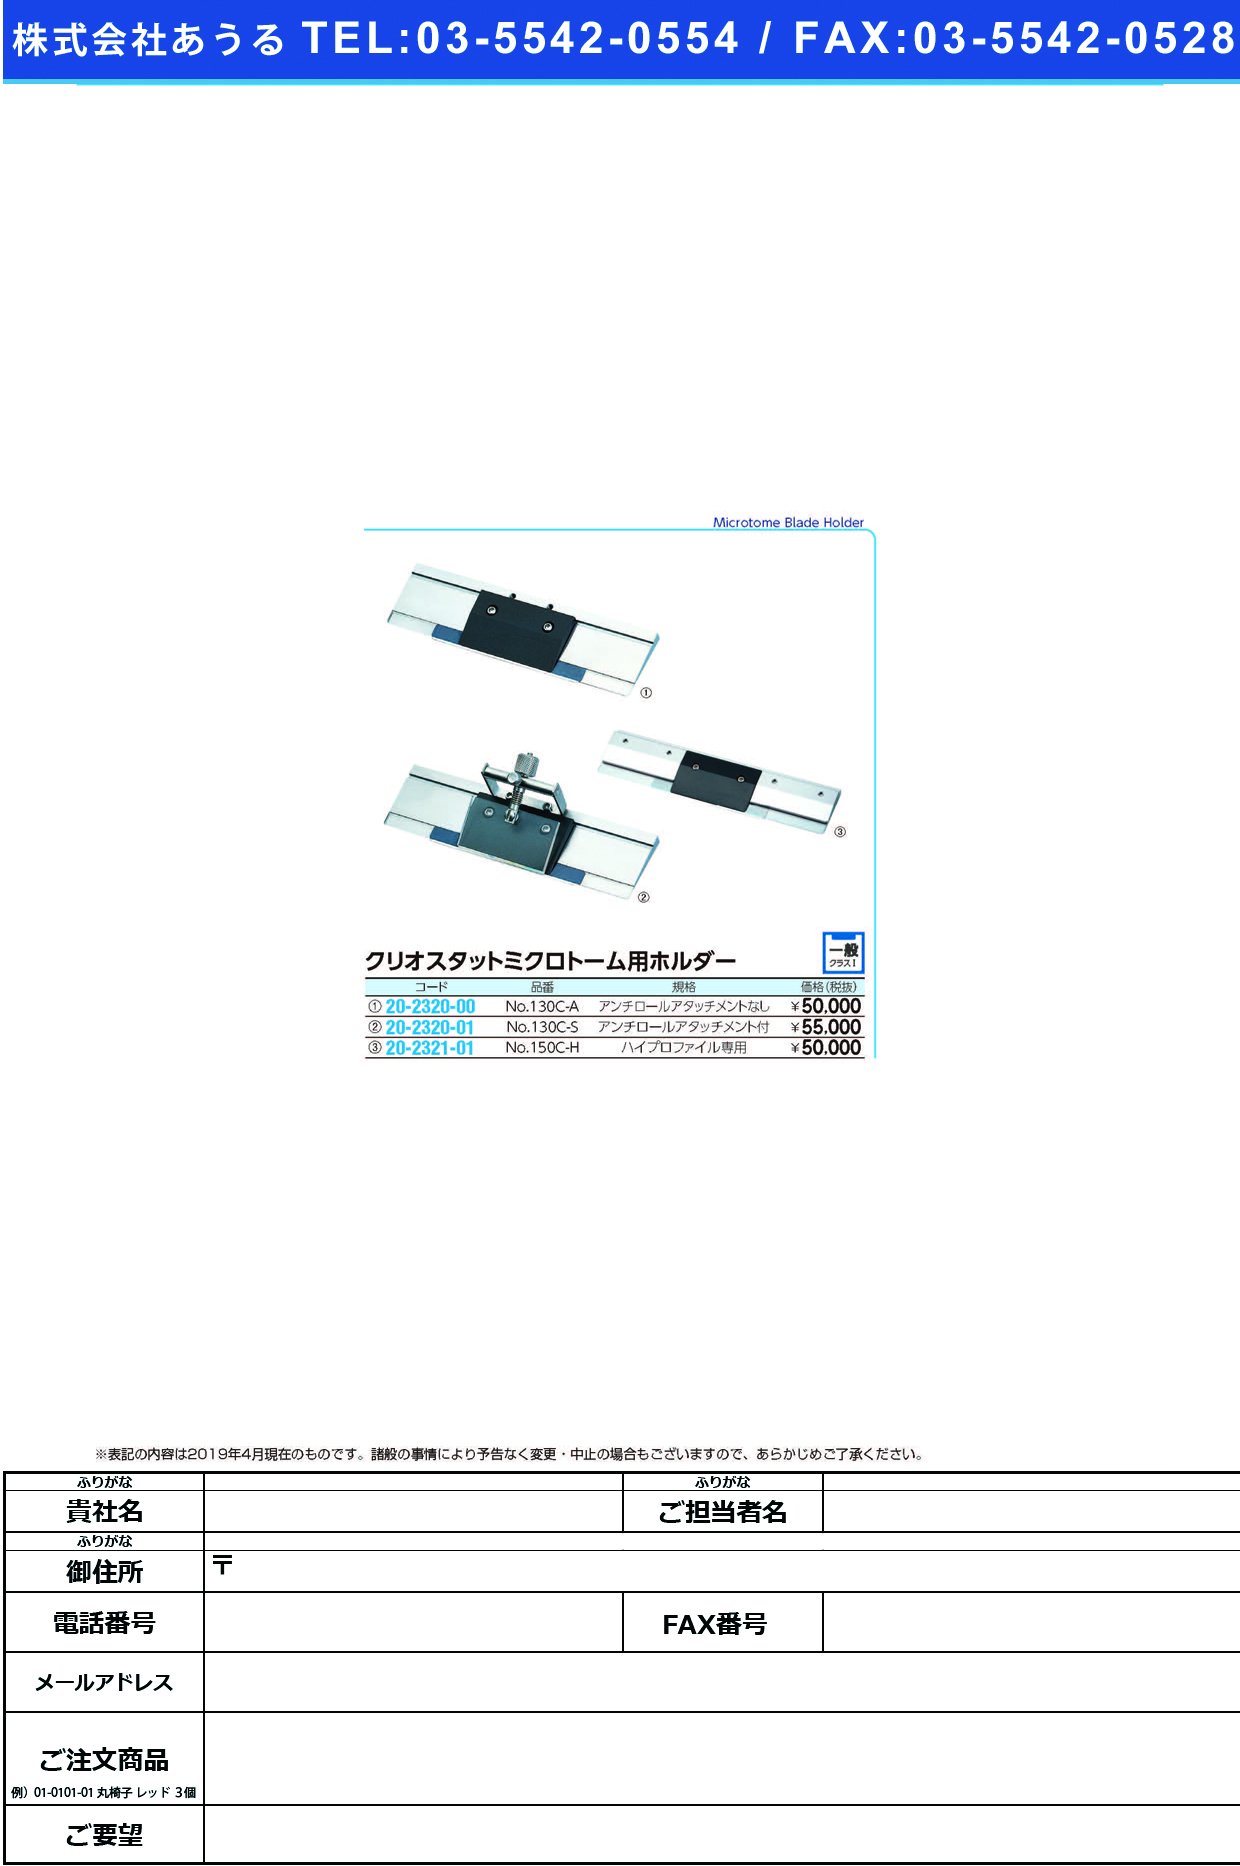 (20-2320-01)ミクロトームホルダーセット NO.130C-S ﾐｸﾛﾄｰﾑﾎﾙﾀﾞｰｾｯﾄ【1組単位】【2019年カタログ商品】